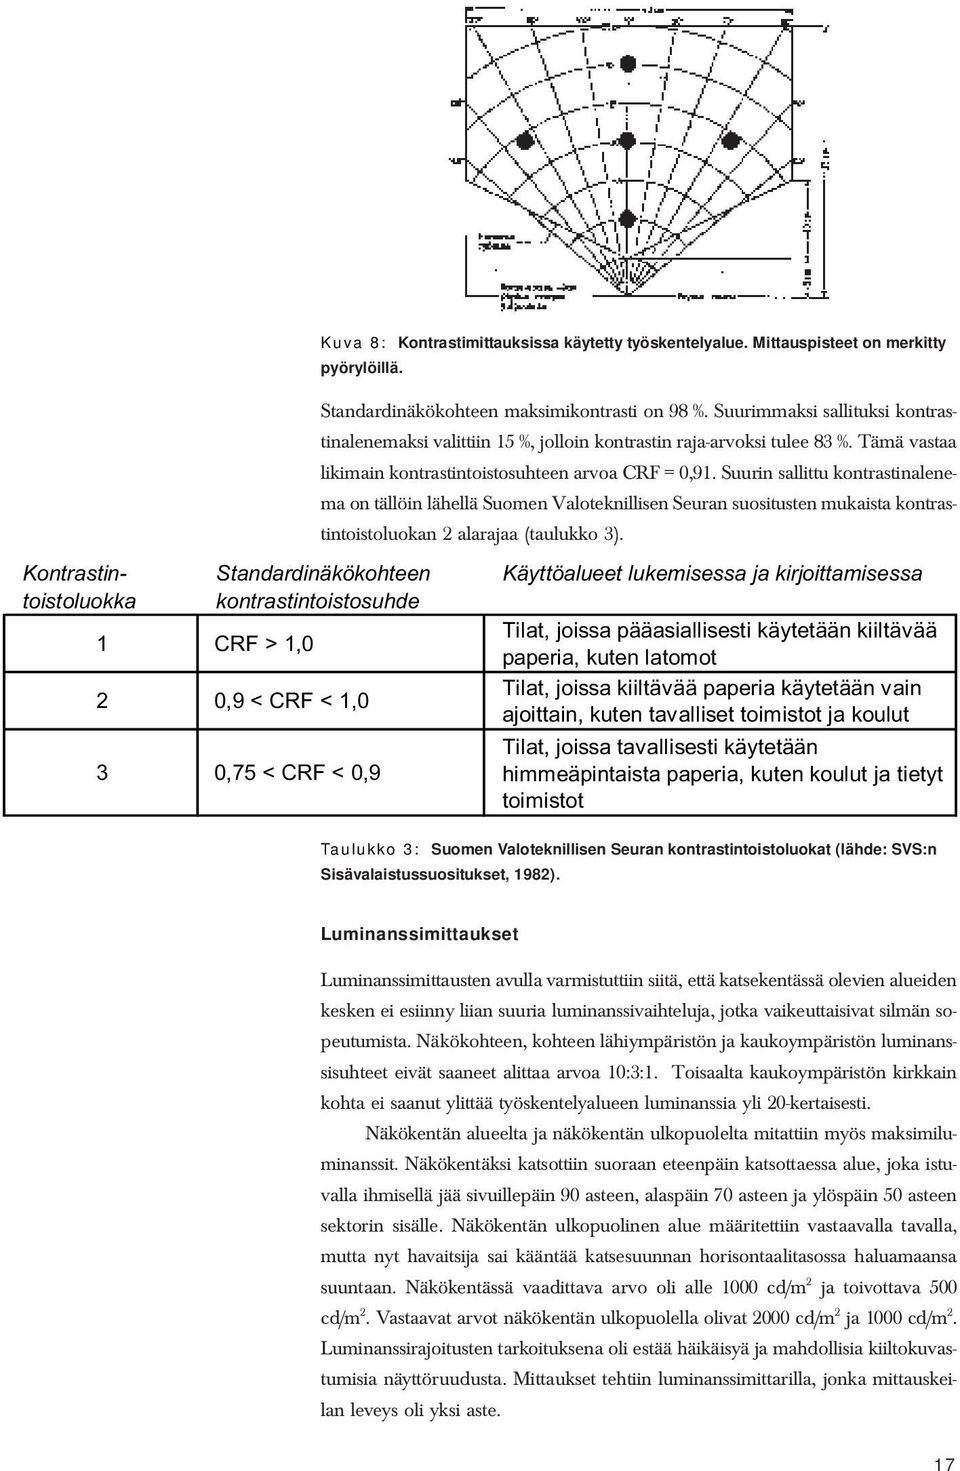 Suurin sallittu kontrastinalenema on tällöin lähellä Suomen Valoteknillisen Seuran suositusten mukaista kontrastintoistoluokan 2 alarajaa (taulukko 3).